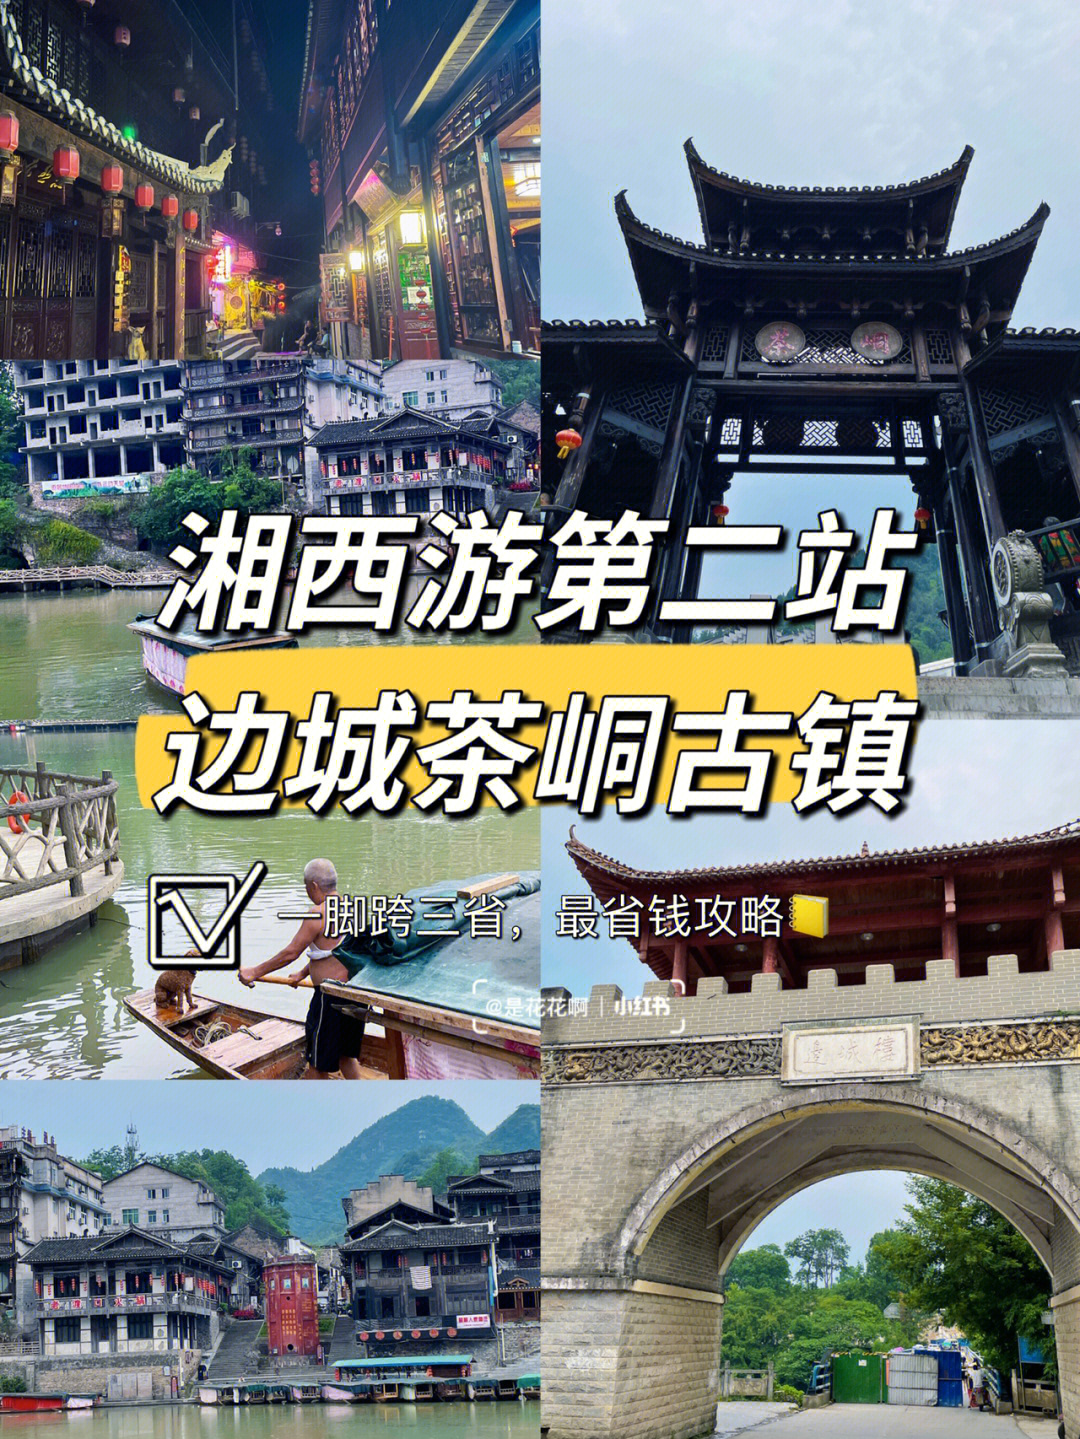 湘西游第二站小众旅游地花垣县边城茶峒